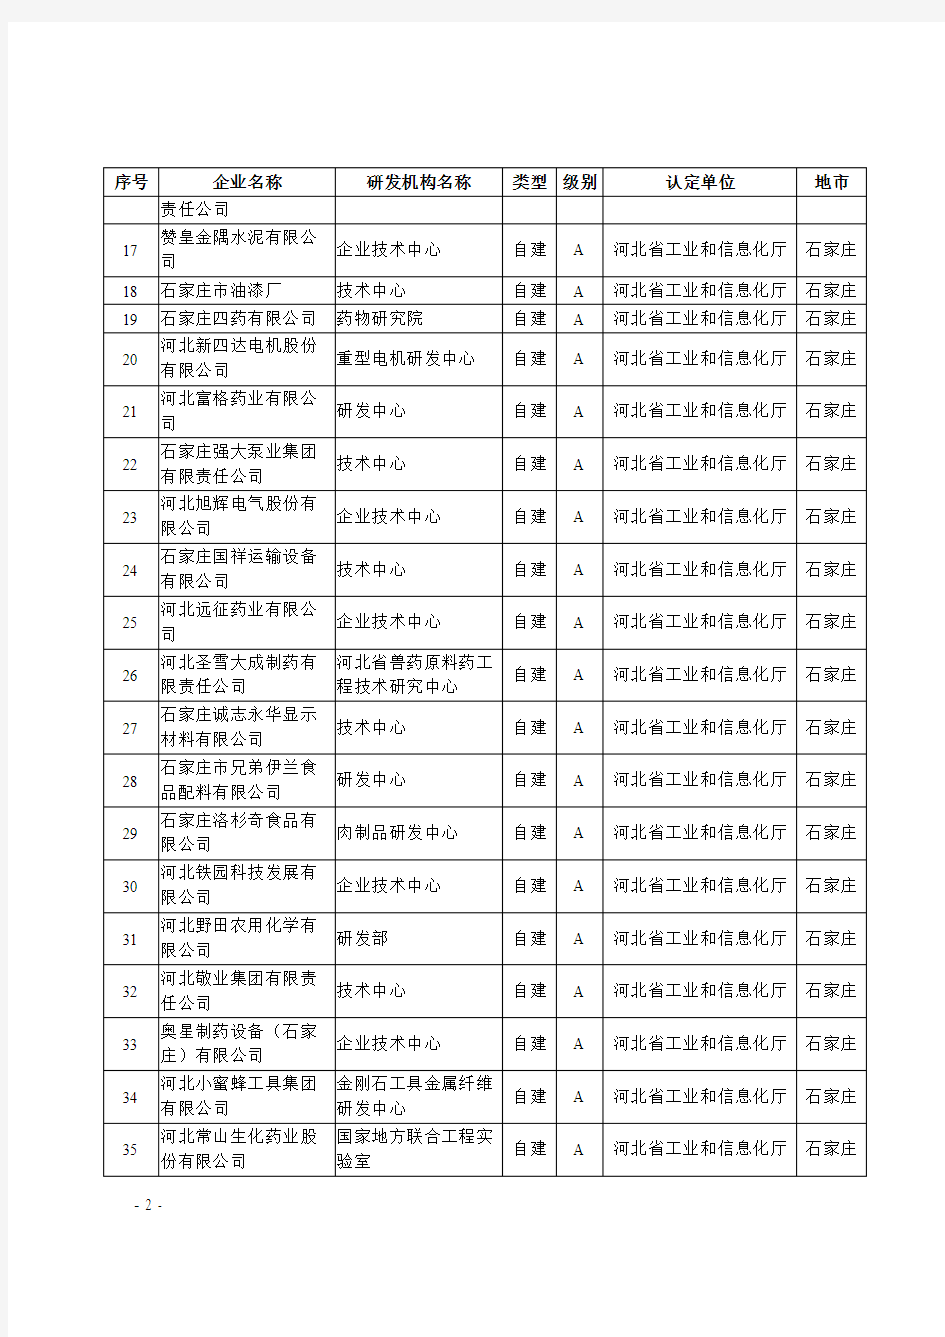 2017年第一批河北省工业企业研发机构名单